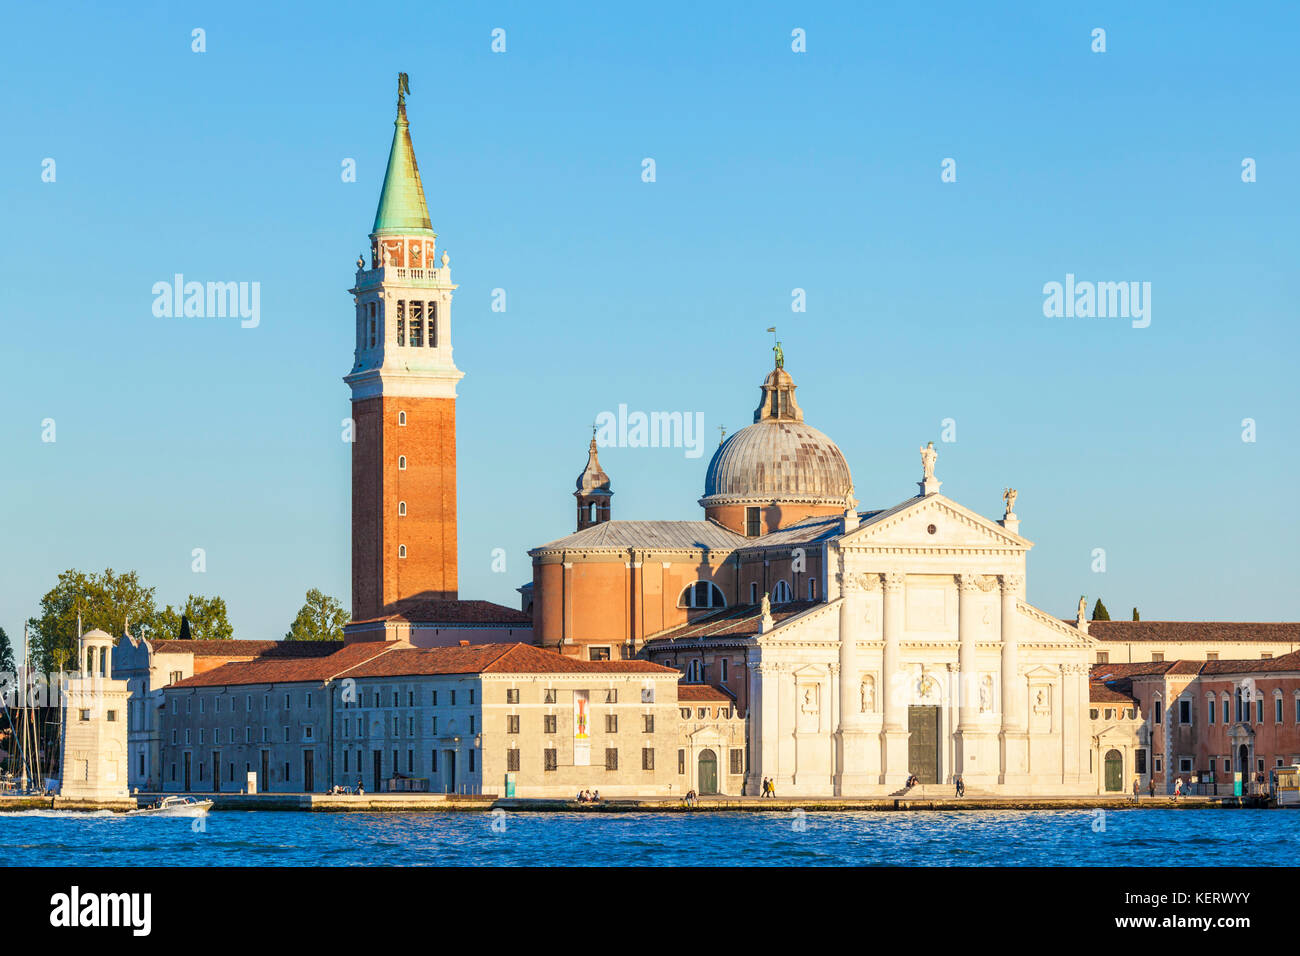 VENICE ITALY VENICE The campanile of the Church of San Giorgio Maggiore Island of San Giorgio Maggiore Venice lagoon Italy Stock Photo